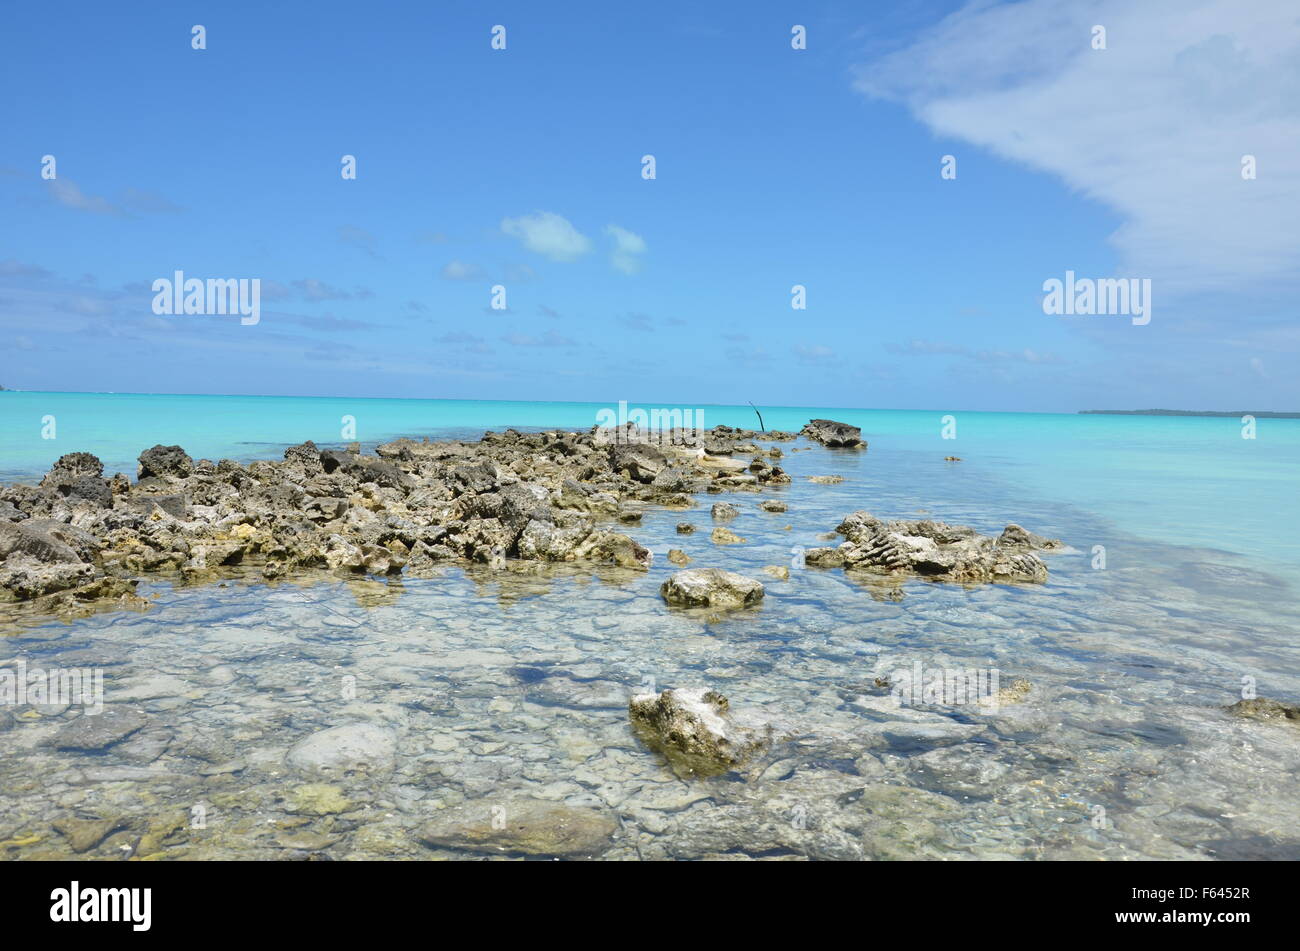 Sea scene, Cook Islands, the Pacific Stock Photo